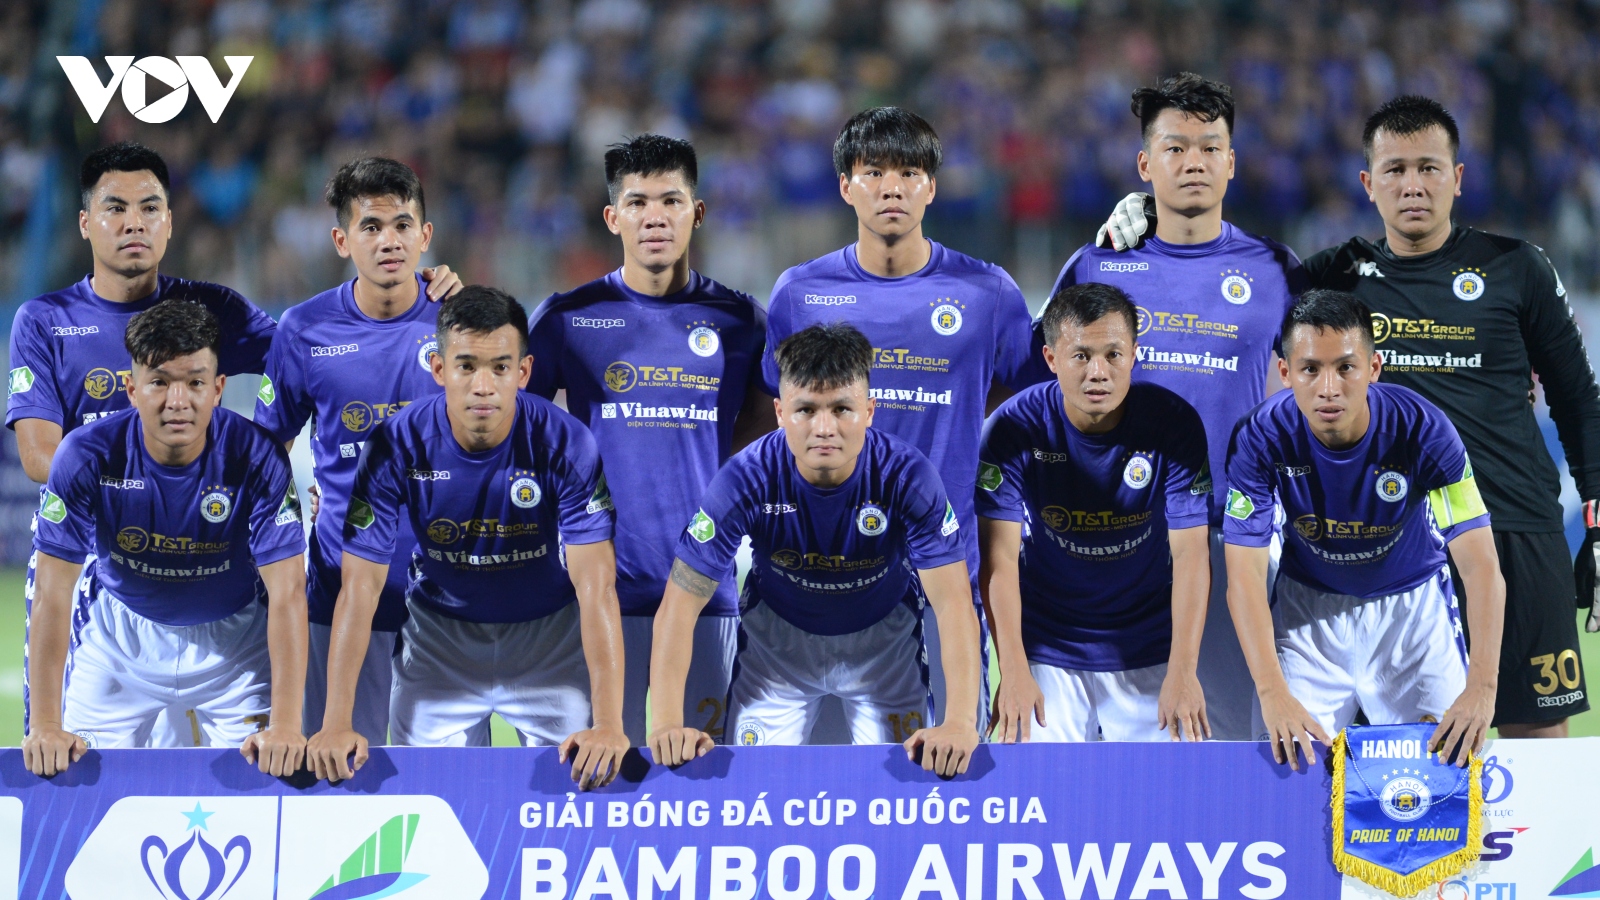 Hành trình vô địch Cúp Quốc gia 2020 của CLB Hà Nội